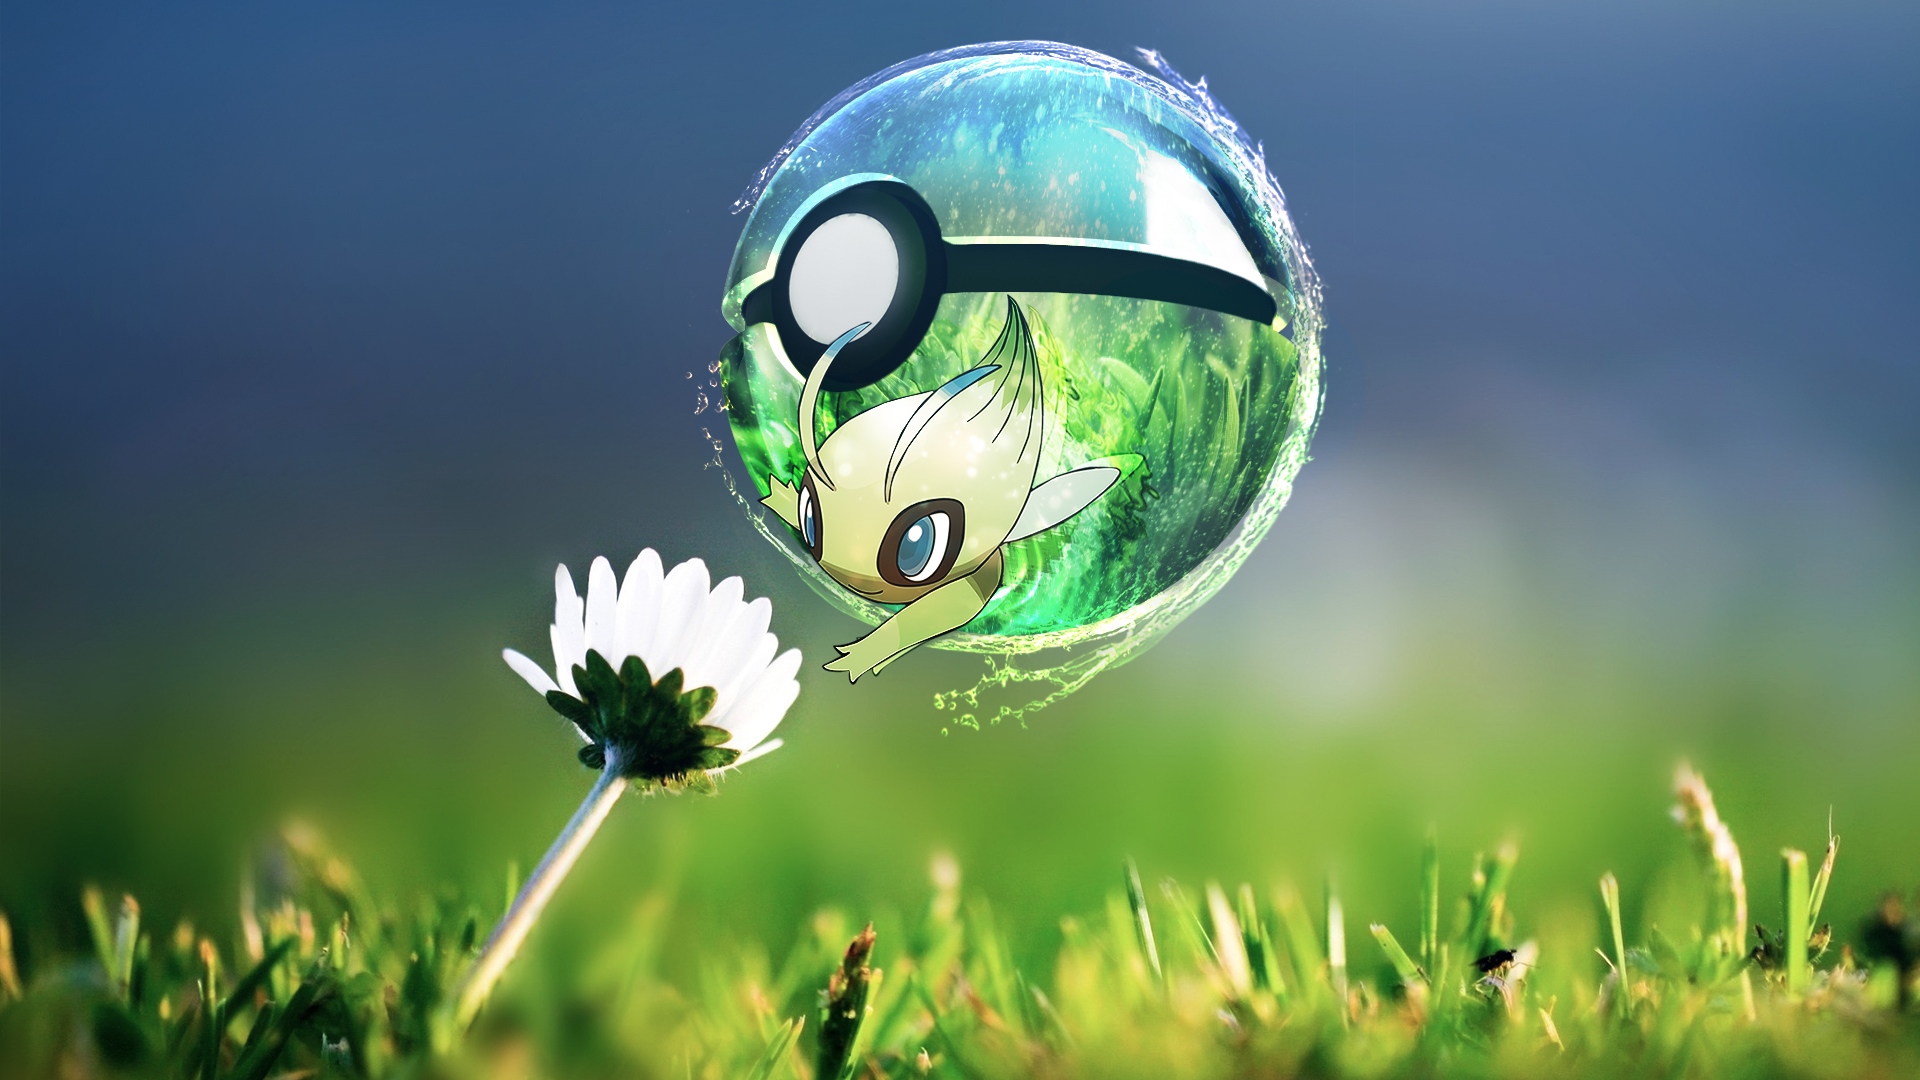 100 Hình nền ảnh Pokemon đẹp full HD cho máy tính điện thoại